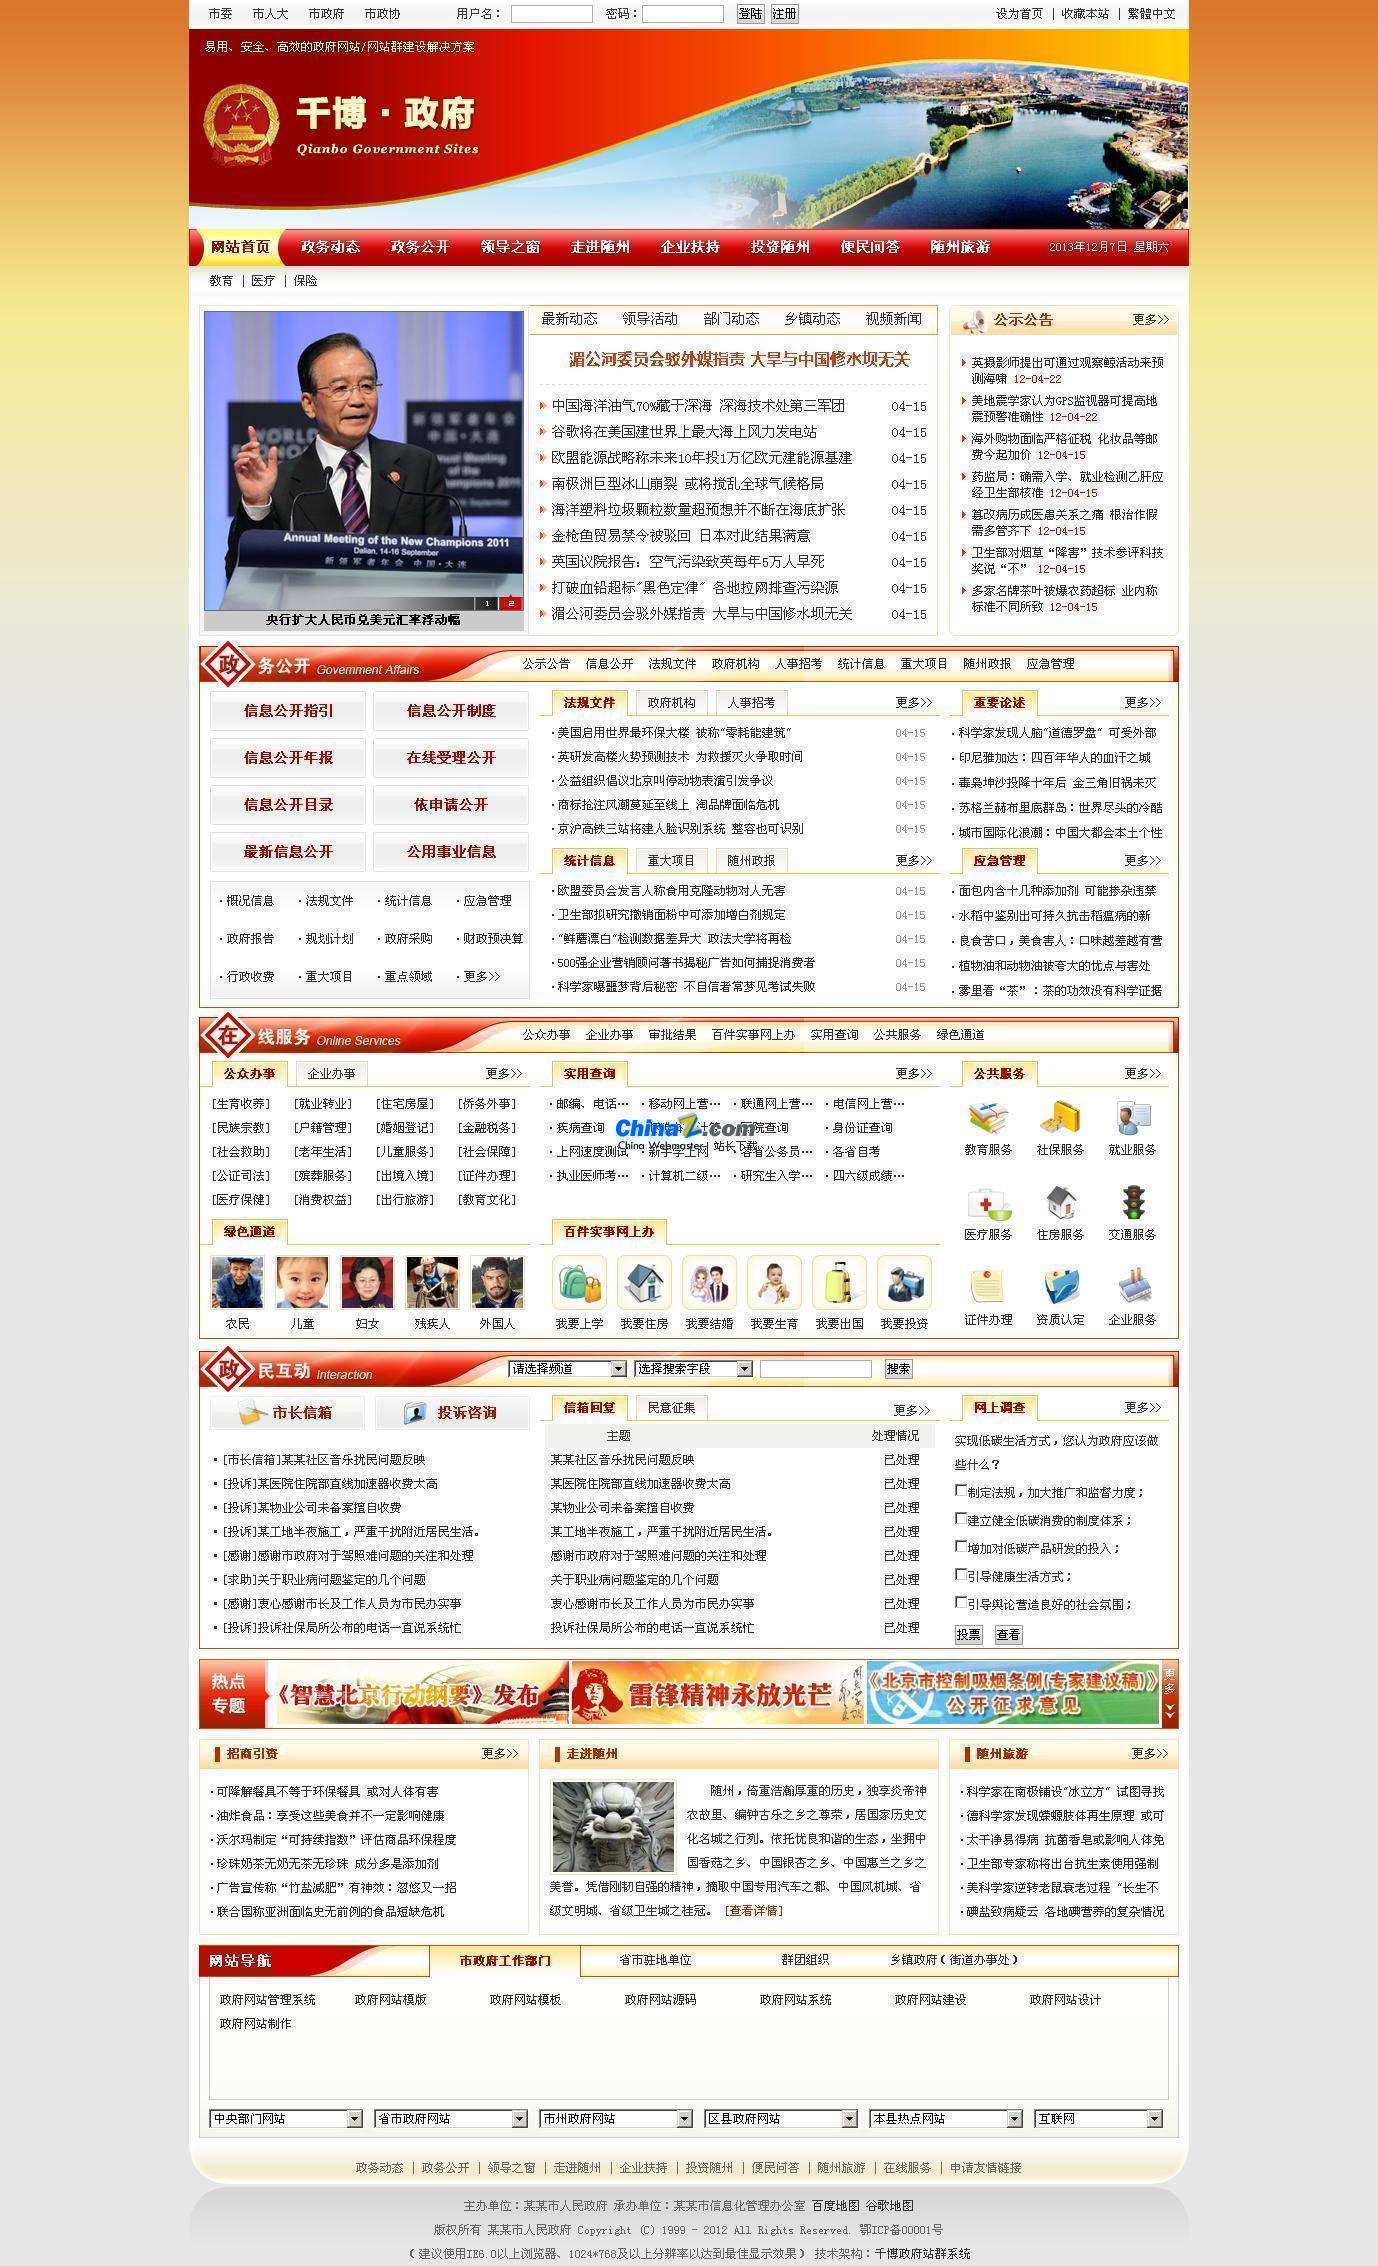 千博政府网站管理系统 